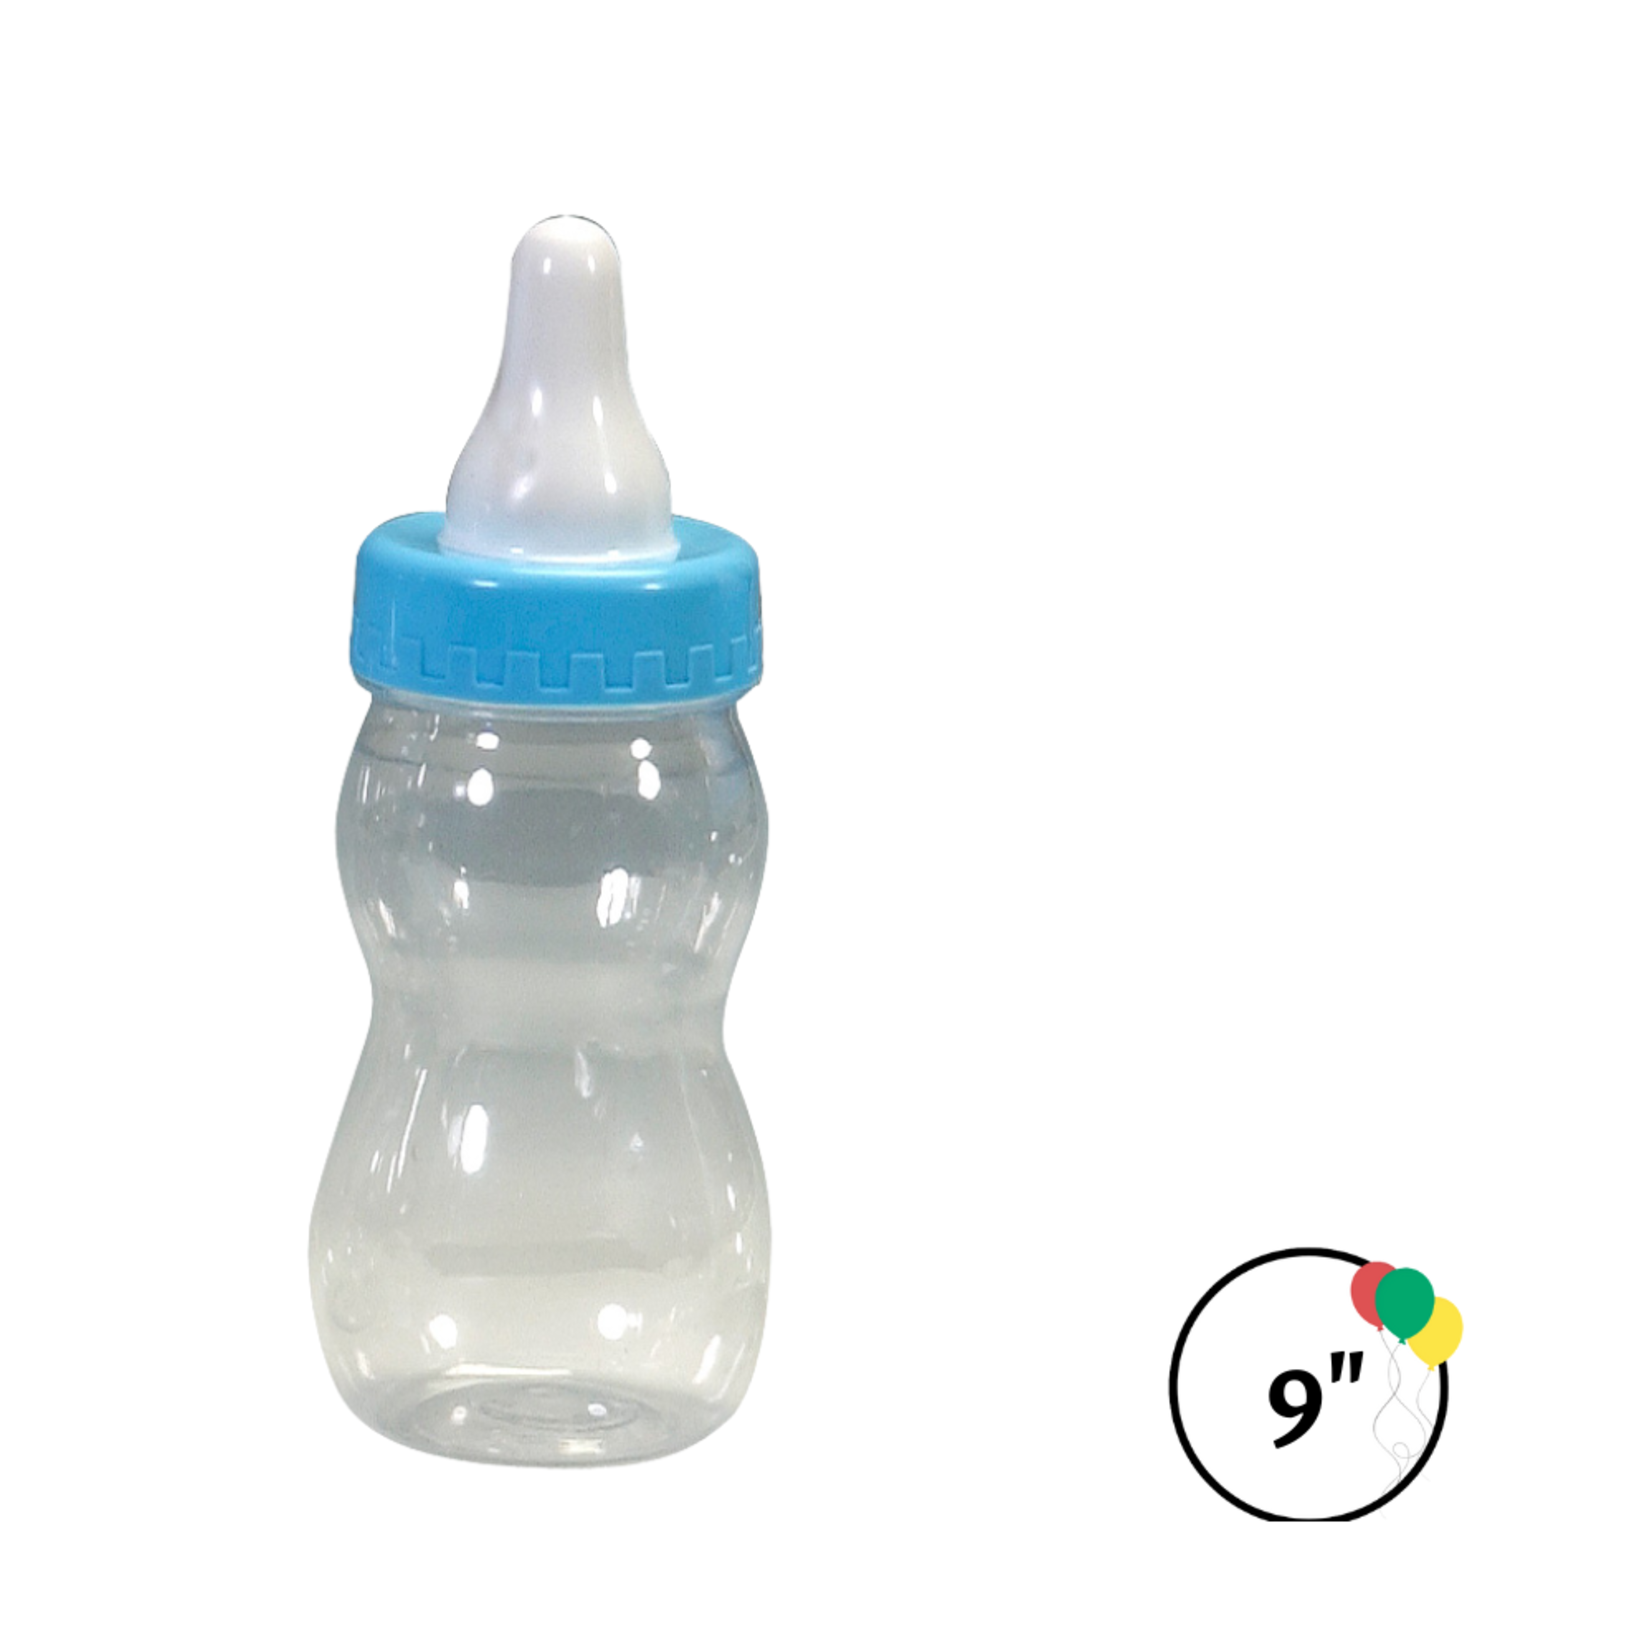 9" Plastic Baby Bottle Blue